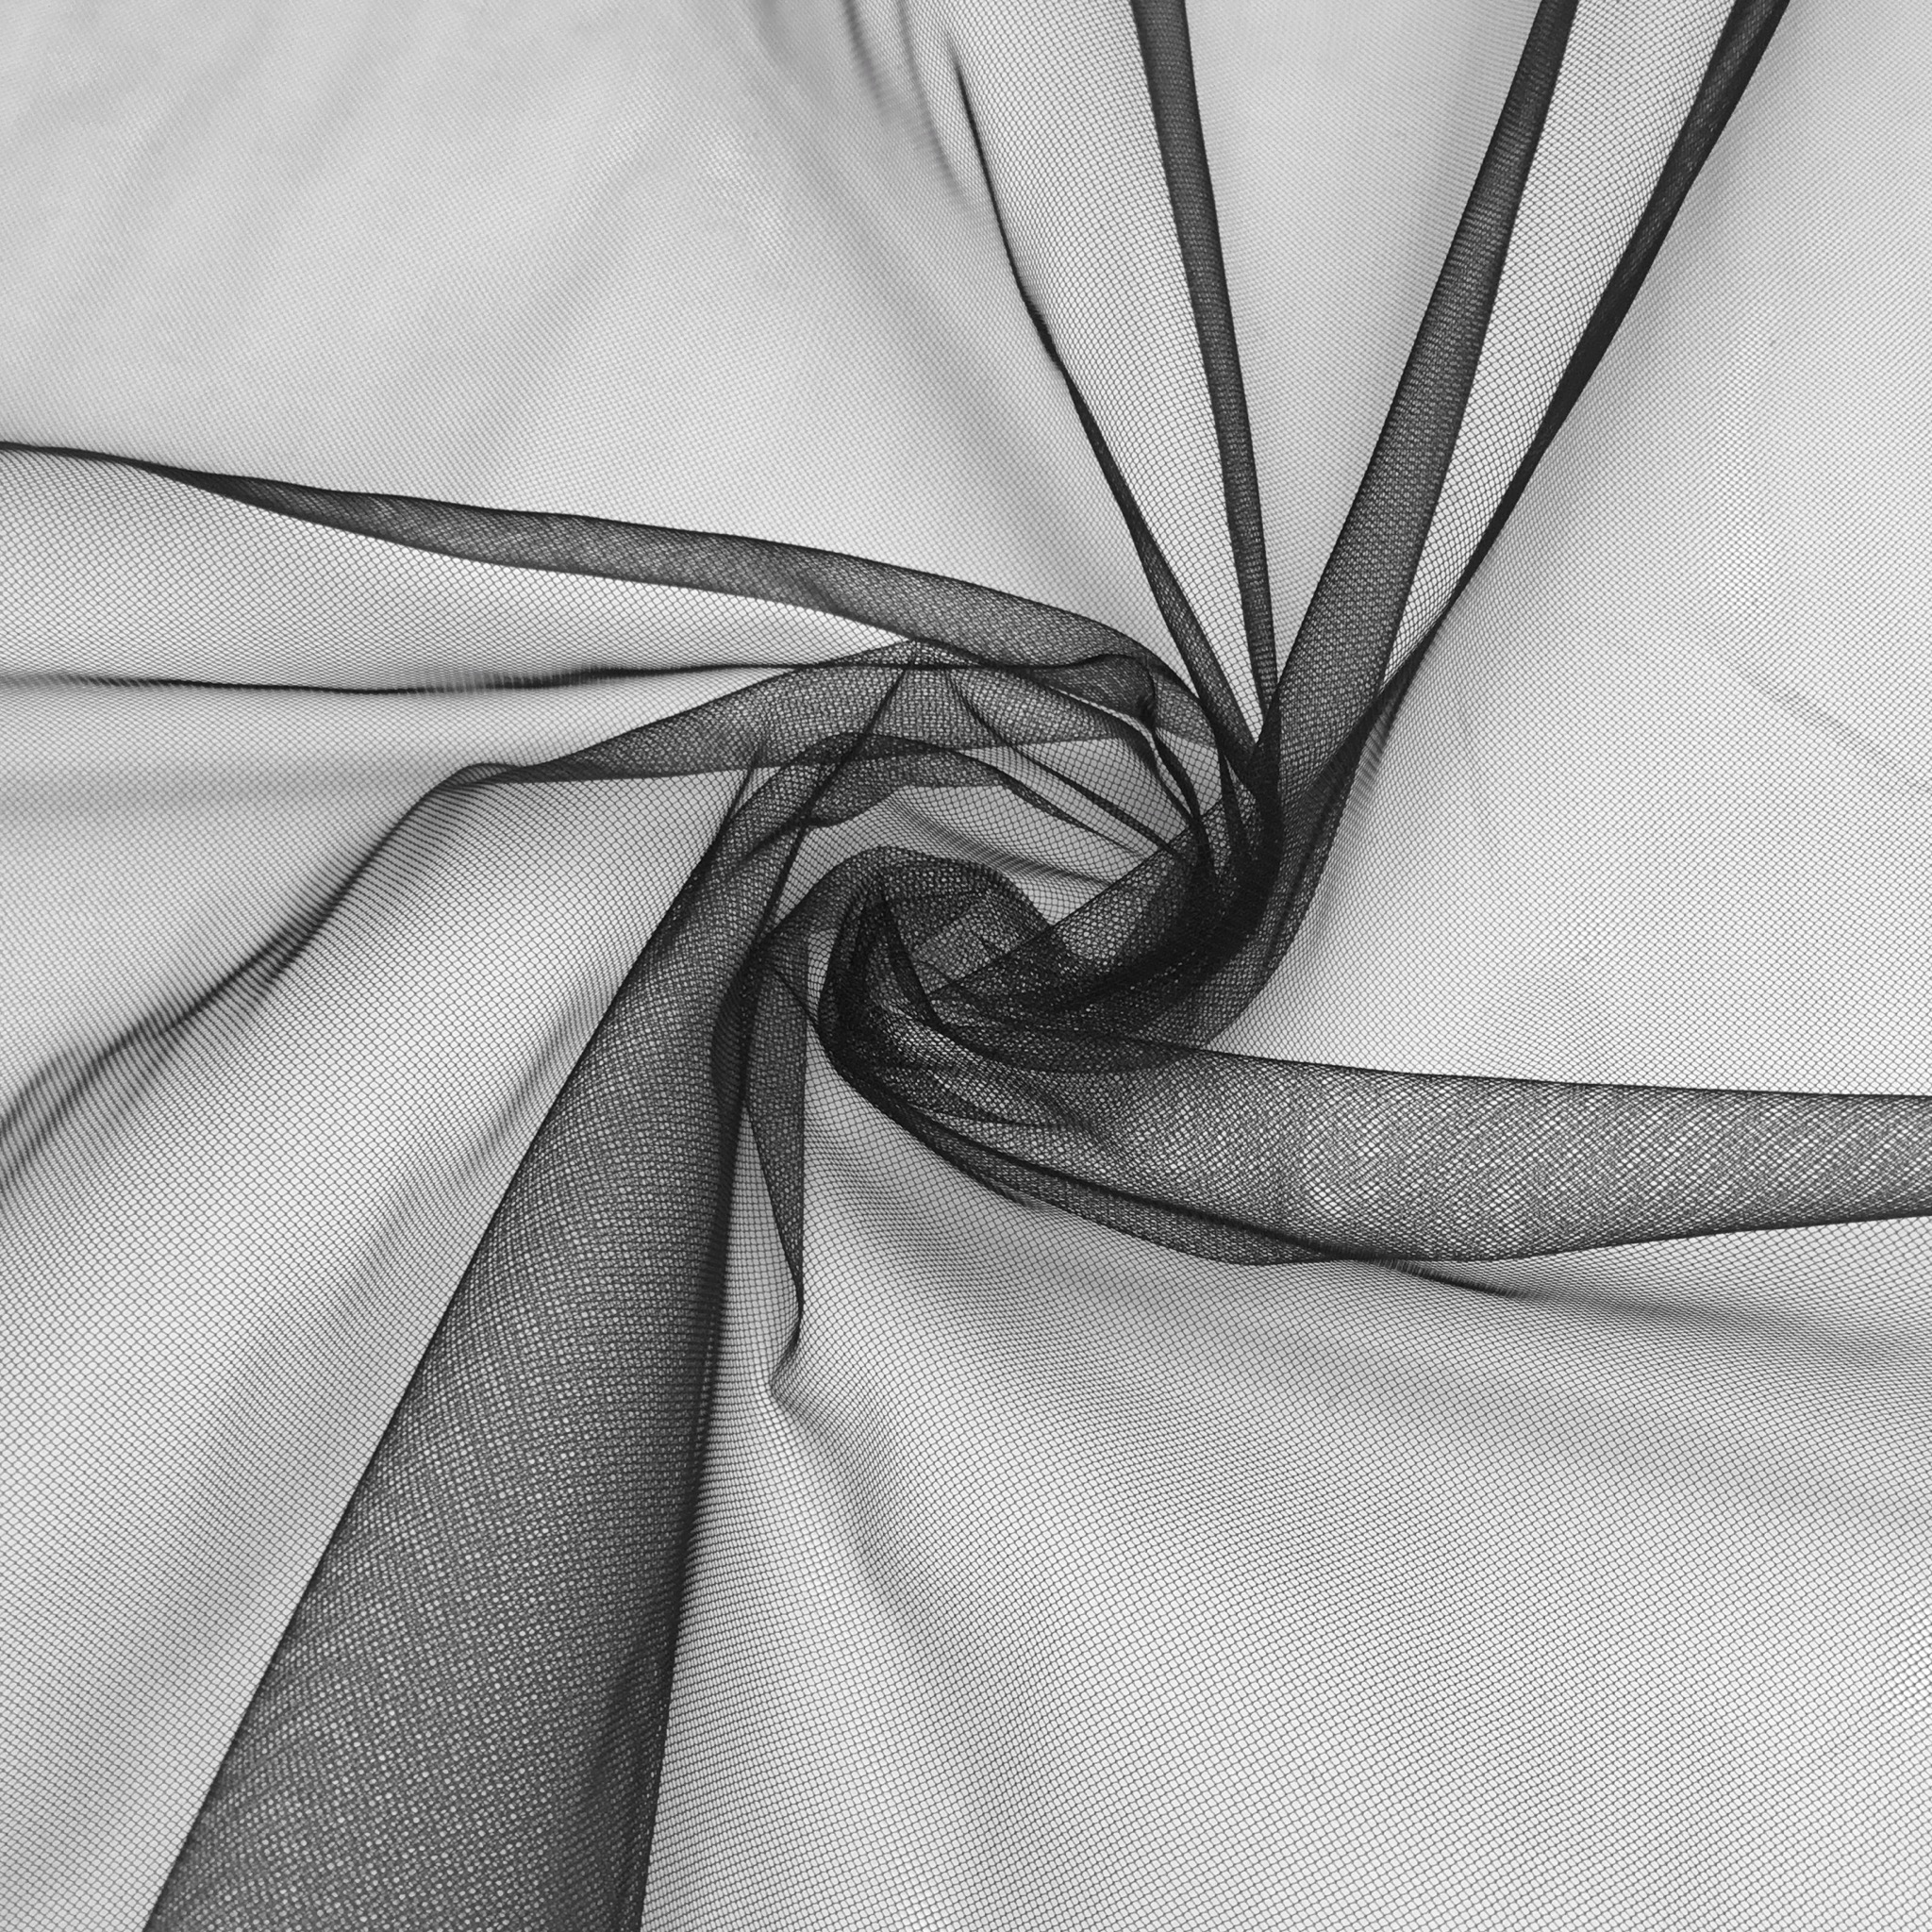 Bralette made of transparent white tulle, sportsbra, wireless bra, sheer  mesh bra, bras, size A, B, C, D, 28, 30, 32, 34, 36, 38, 40, -  Portugal